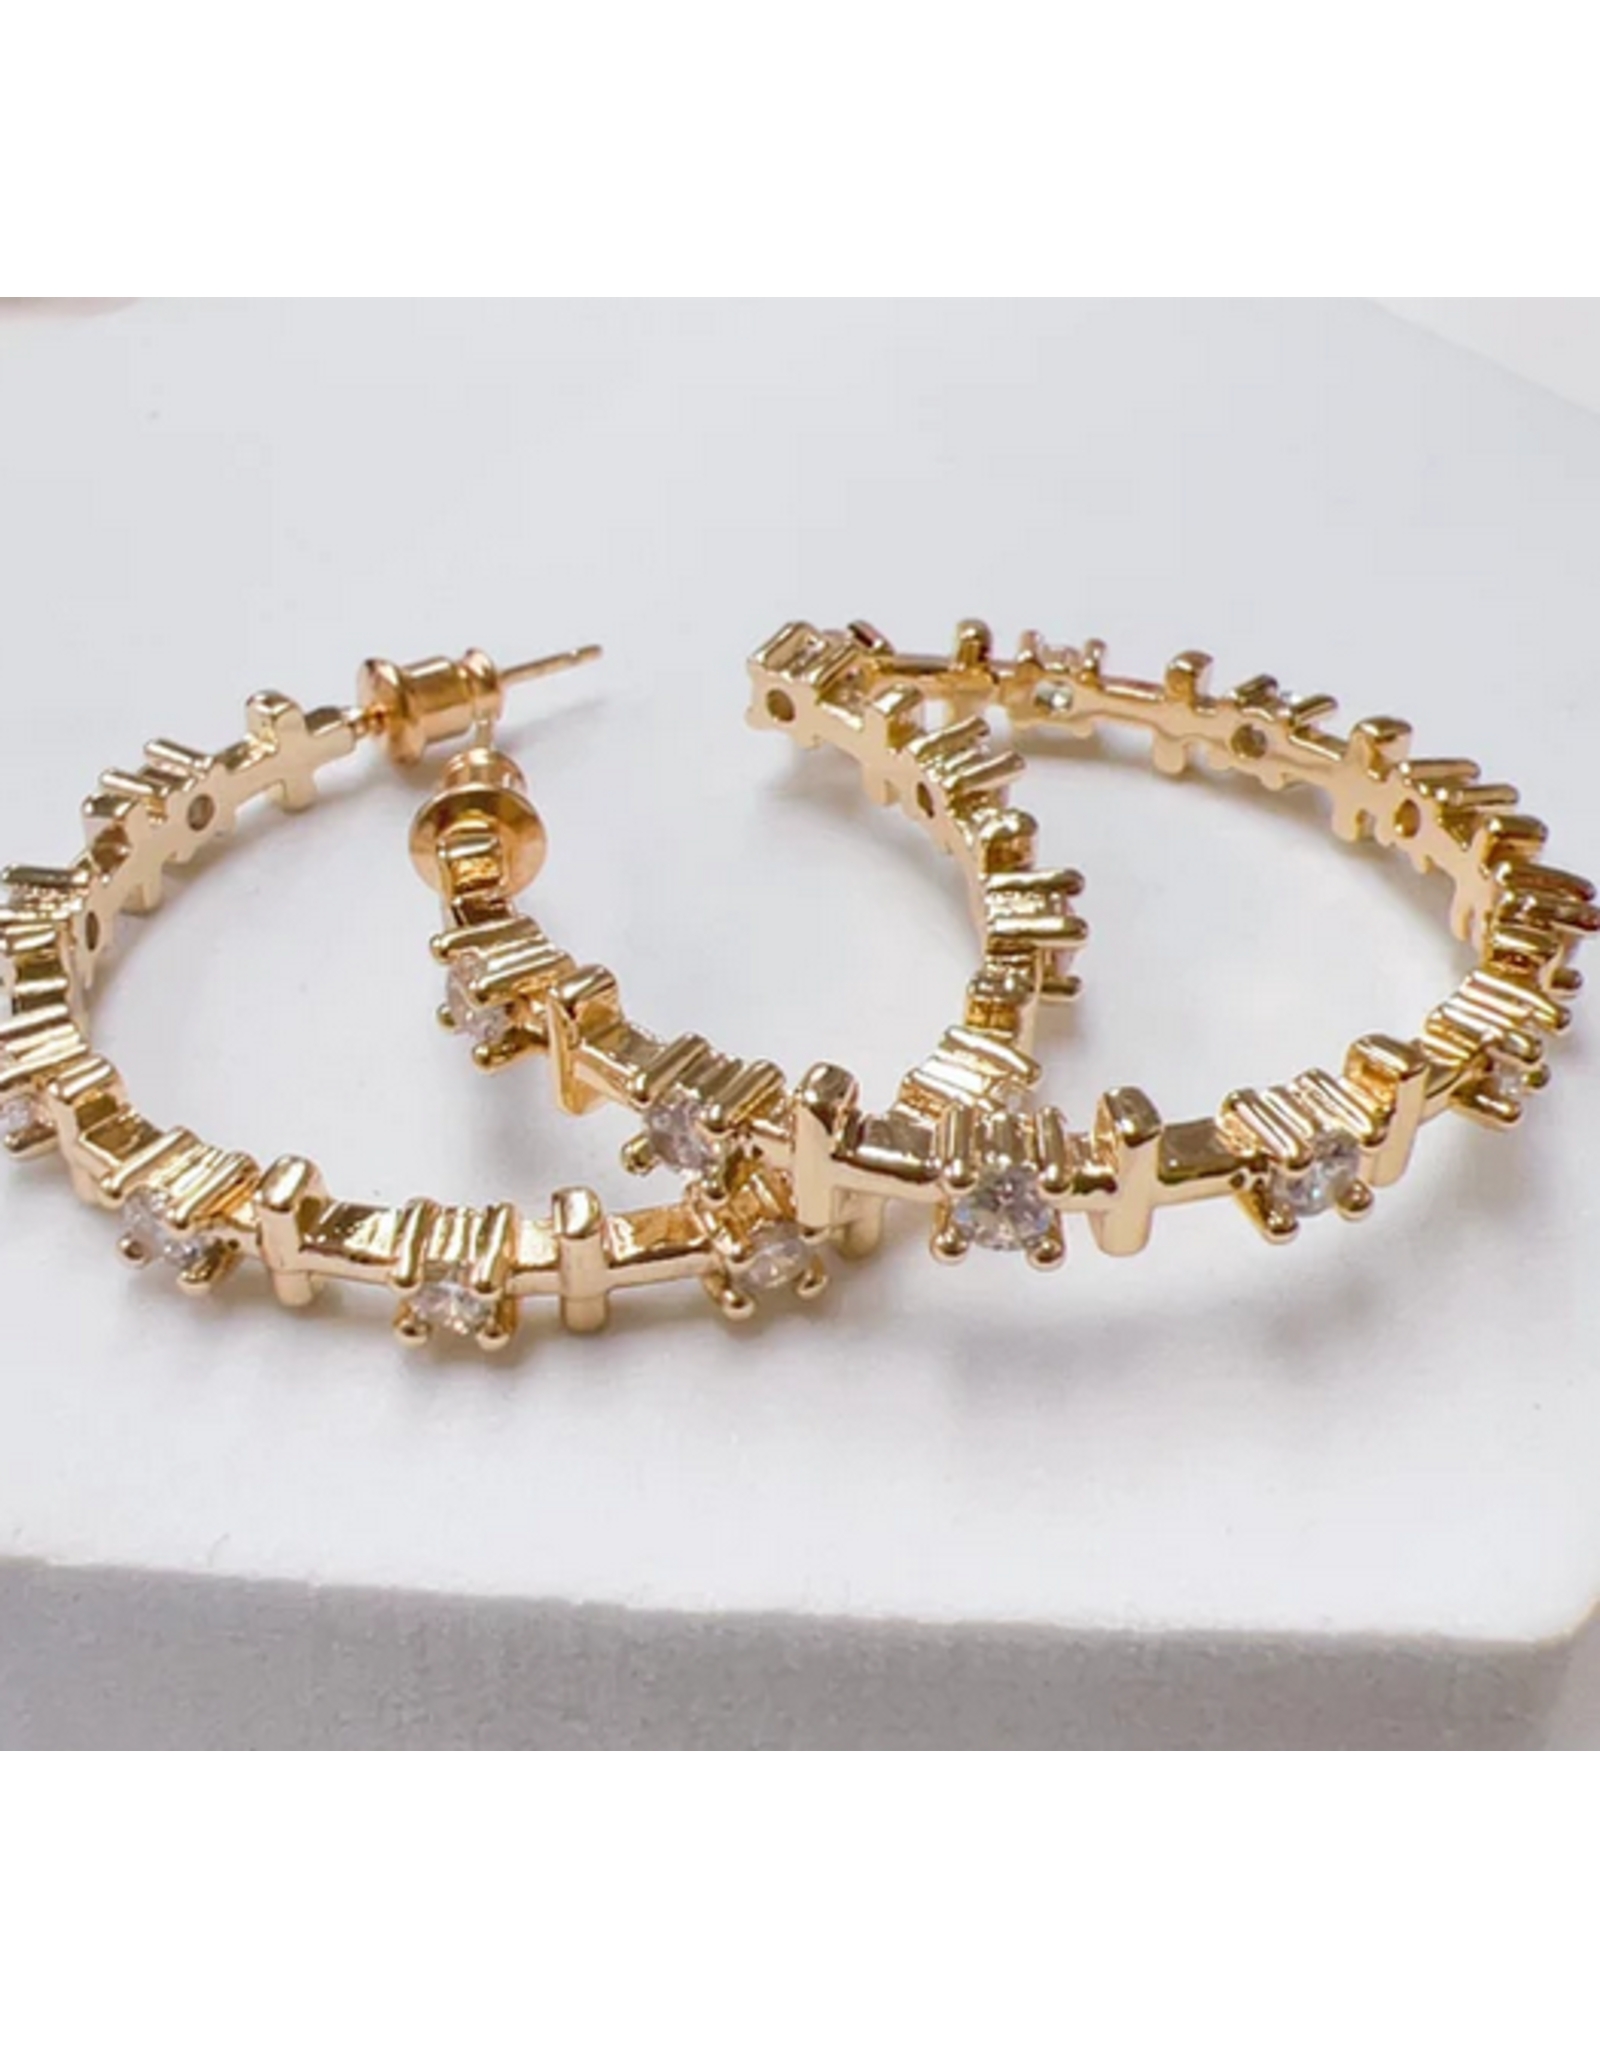 Treasure Jewels Cross Crystal Gold Hoop